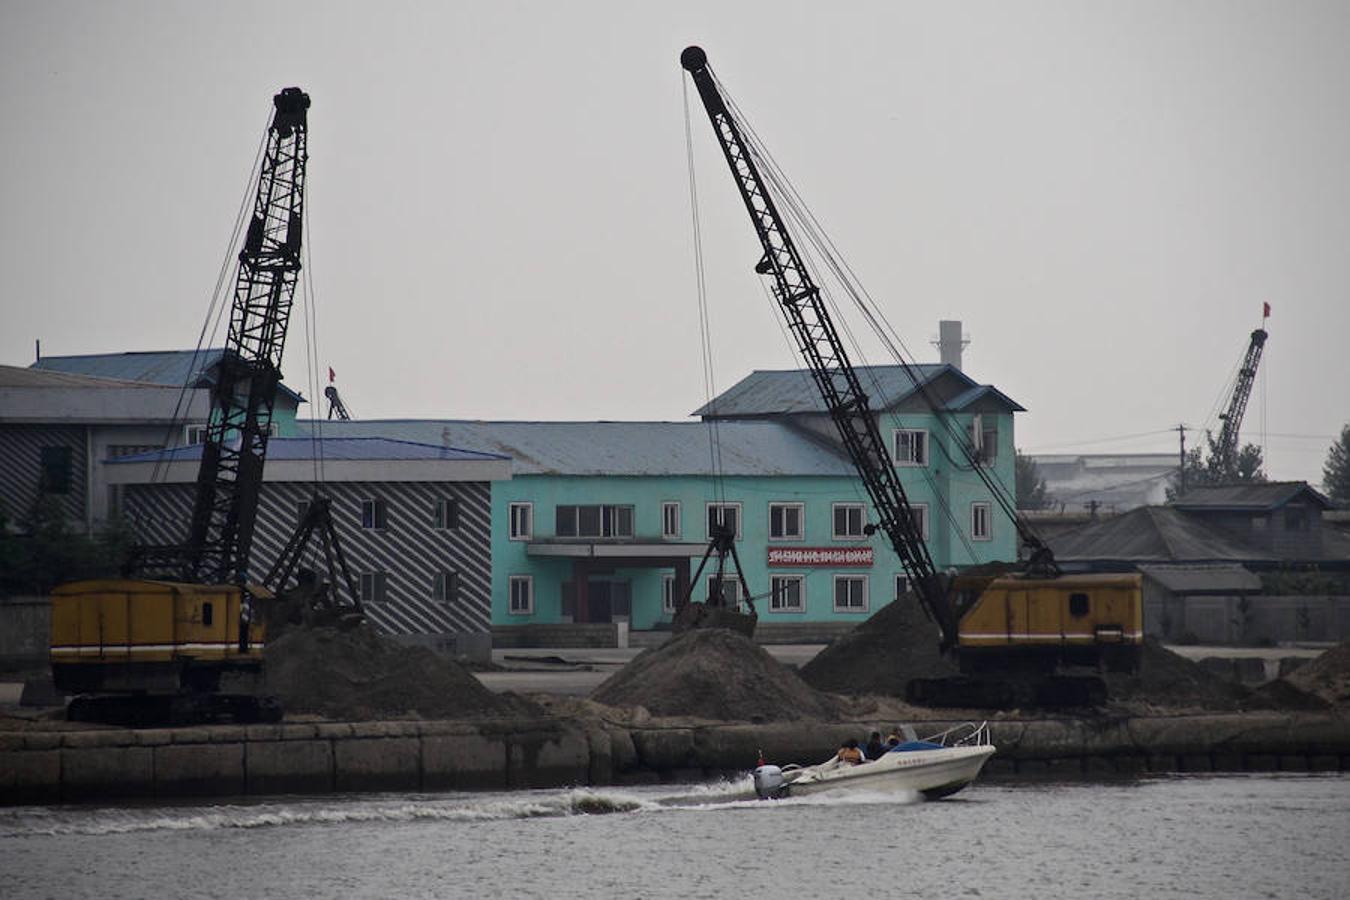 Una lancha de turistas chinos pasa junto al muelle industrial de Sinuiju, donde dos grúas cargan arena. 